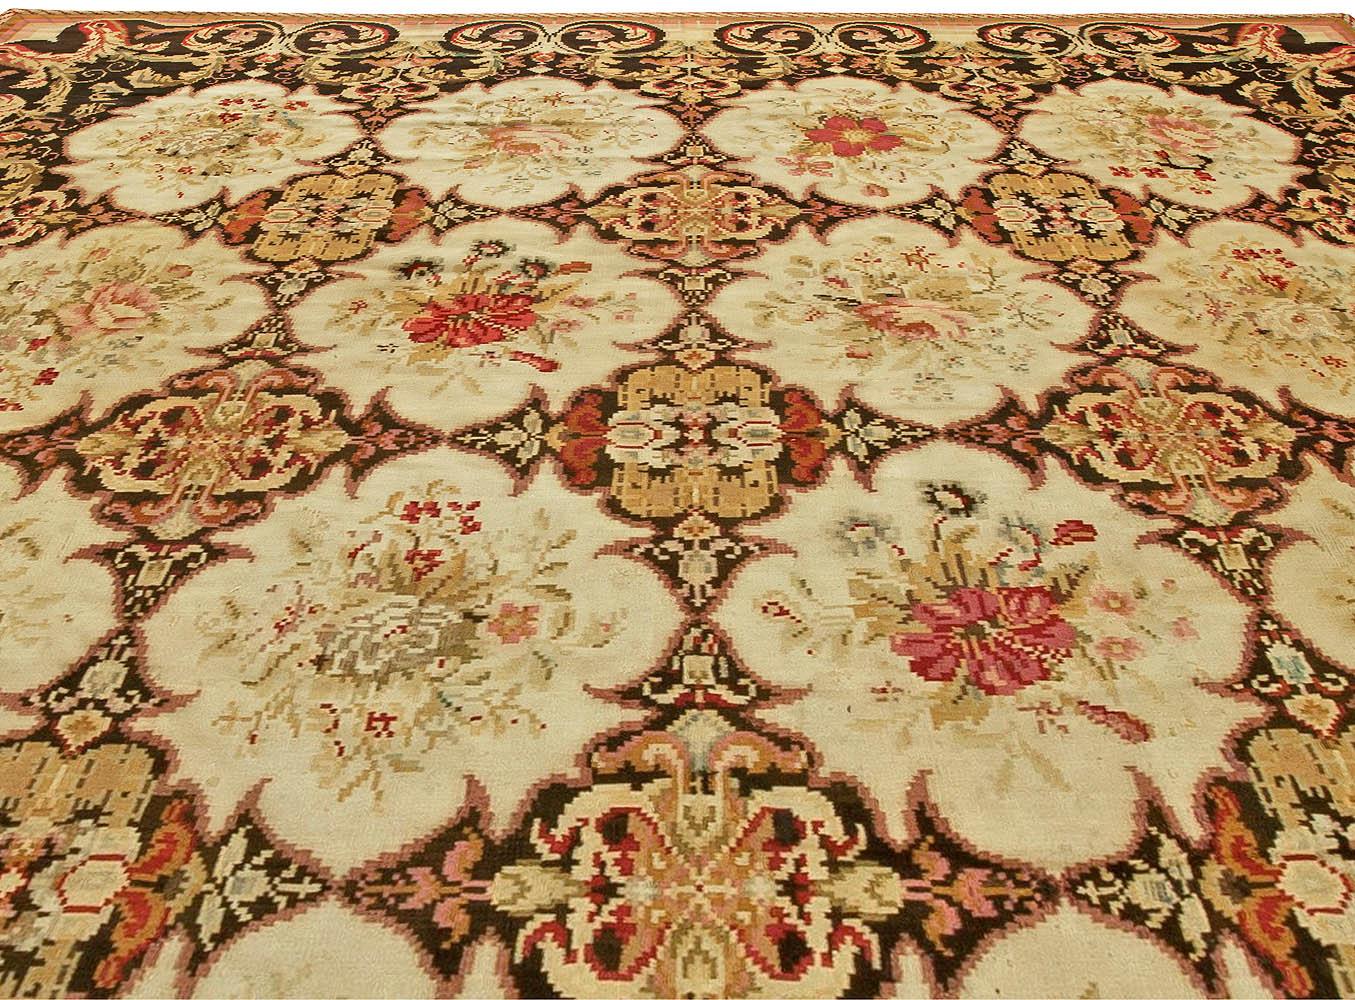 Authentic 19th century Bessarabian handmade rug
Size: 11'8